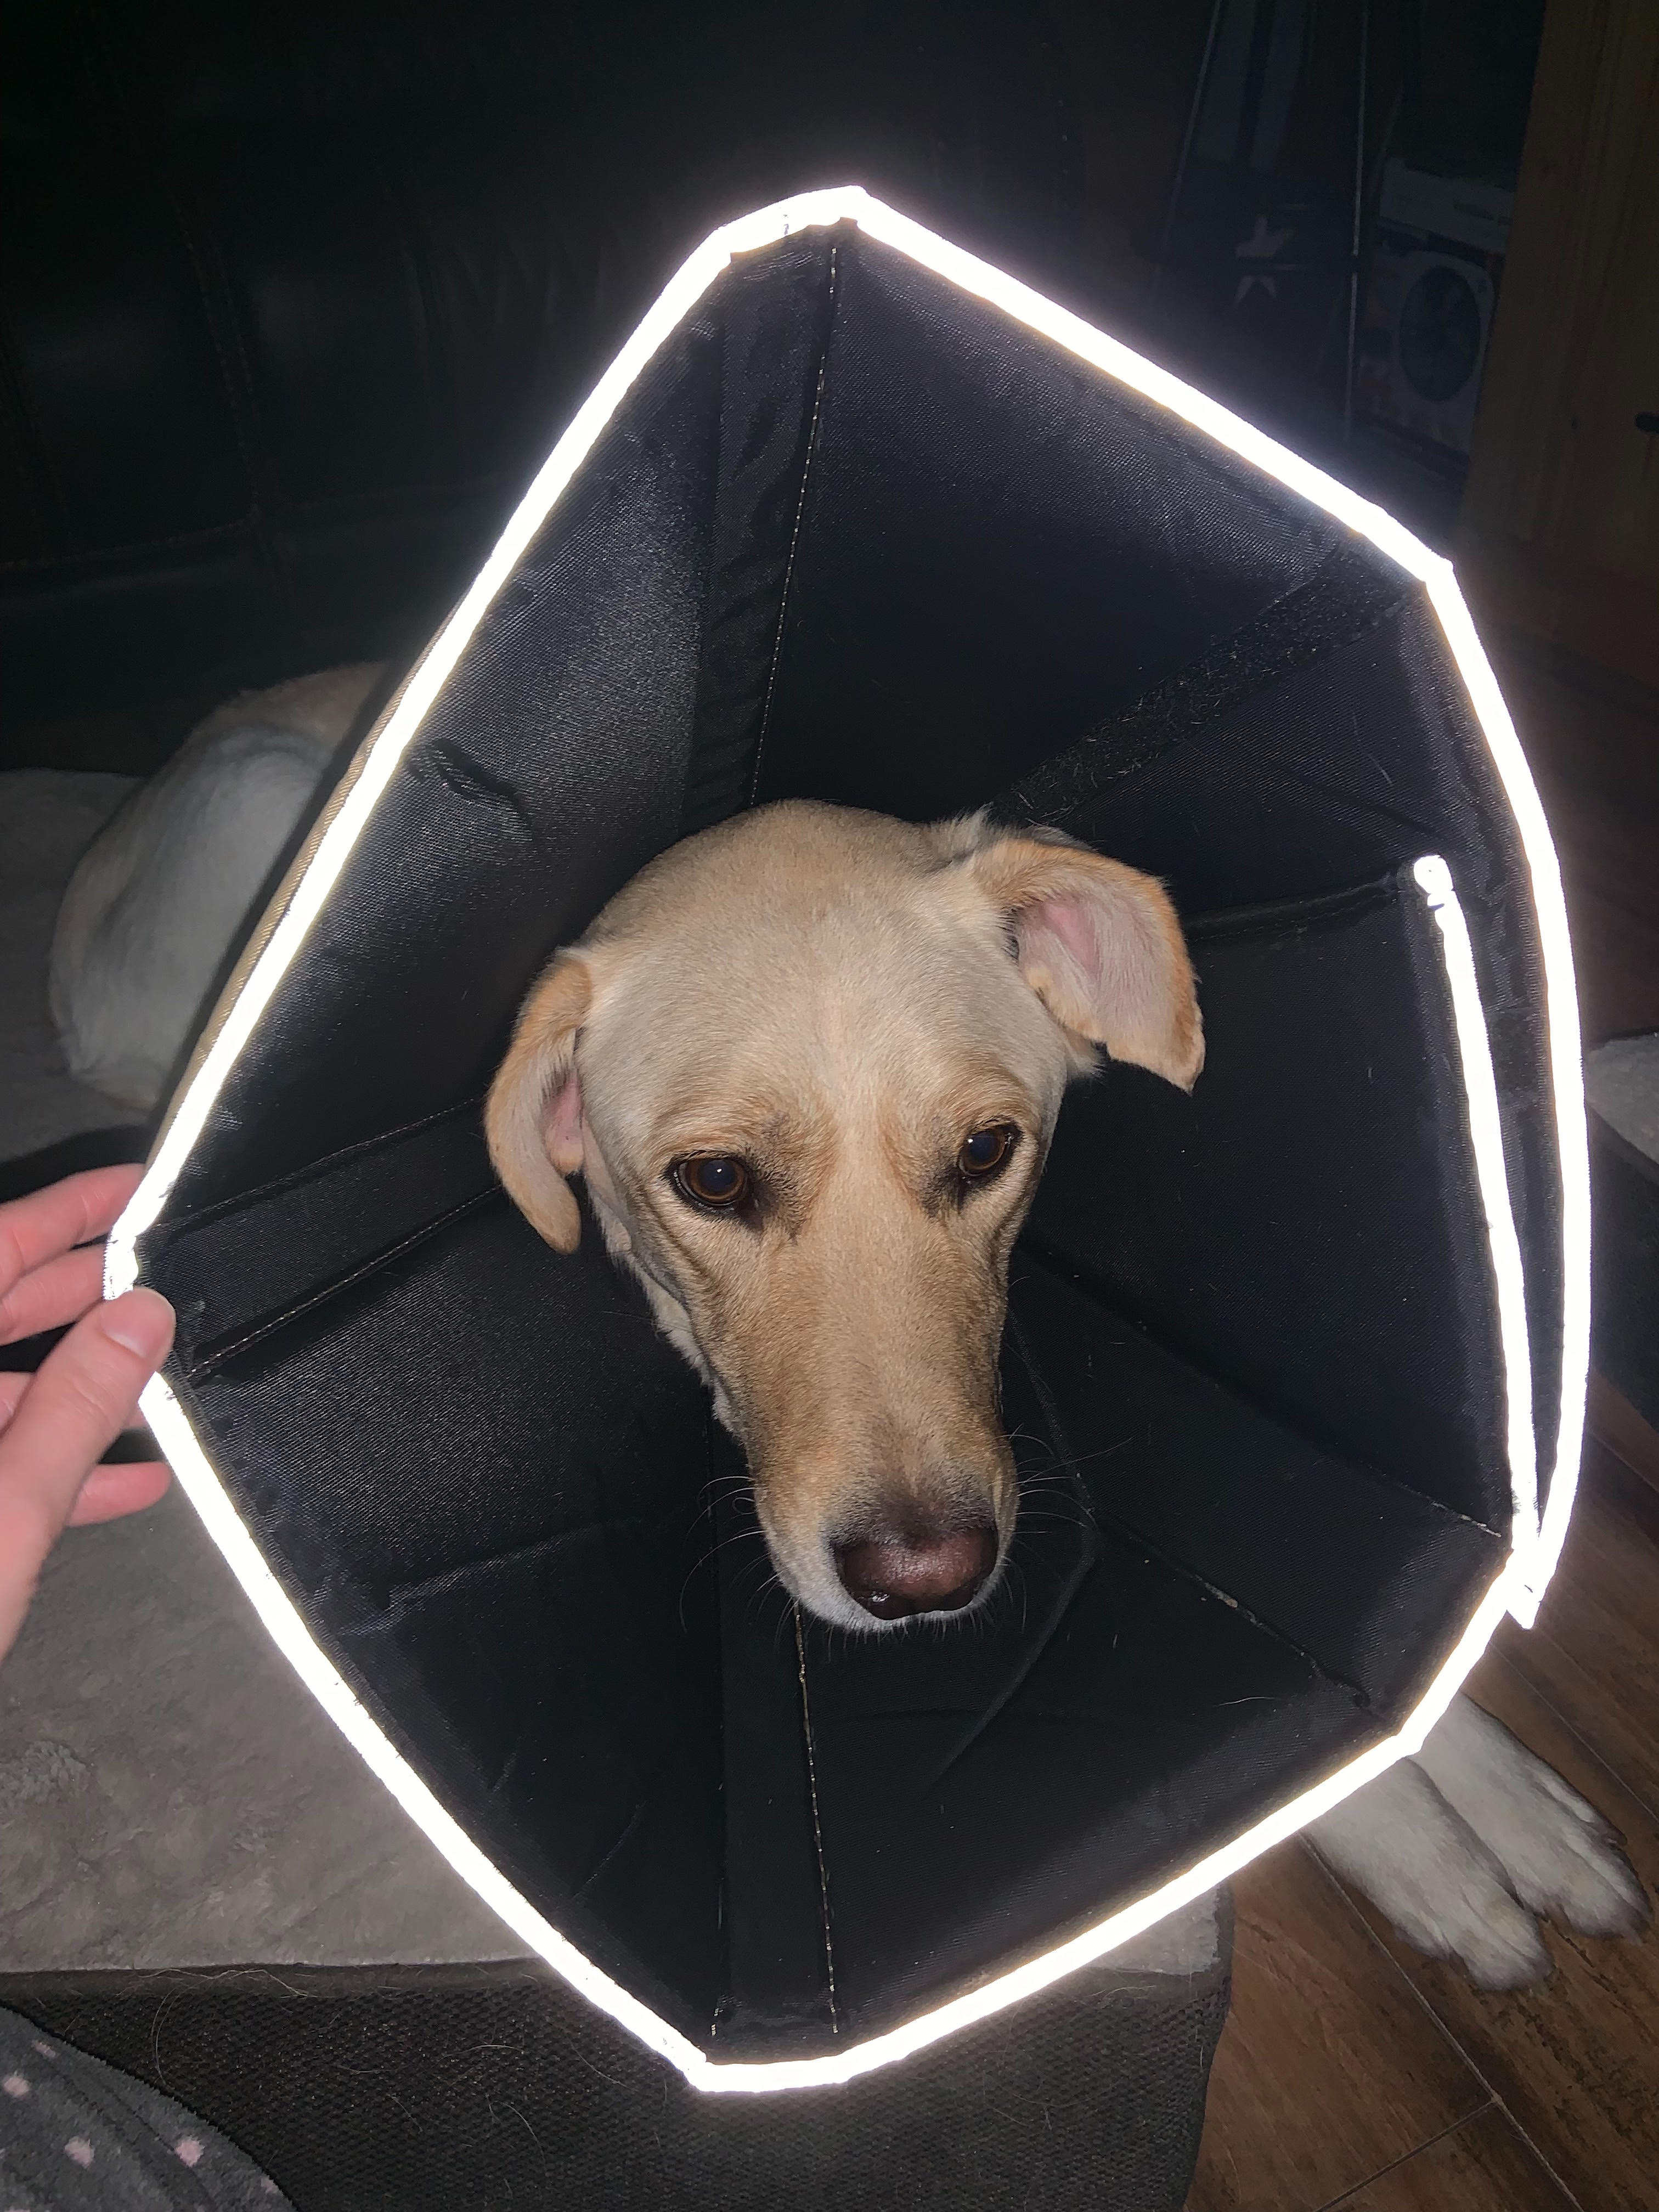 100lb dog wears comfy cone